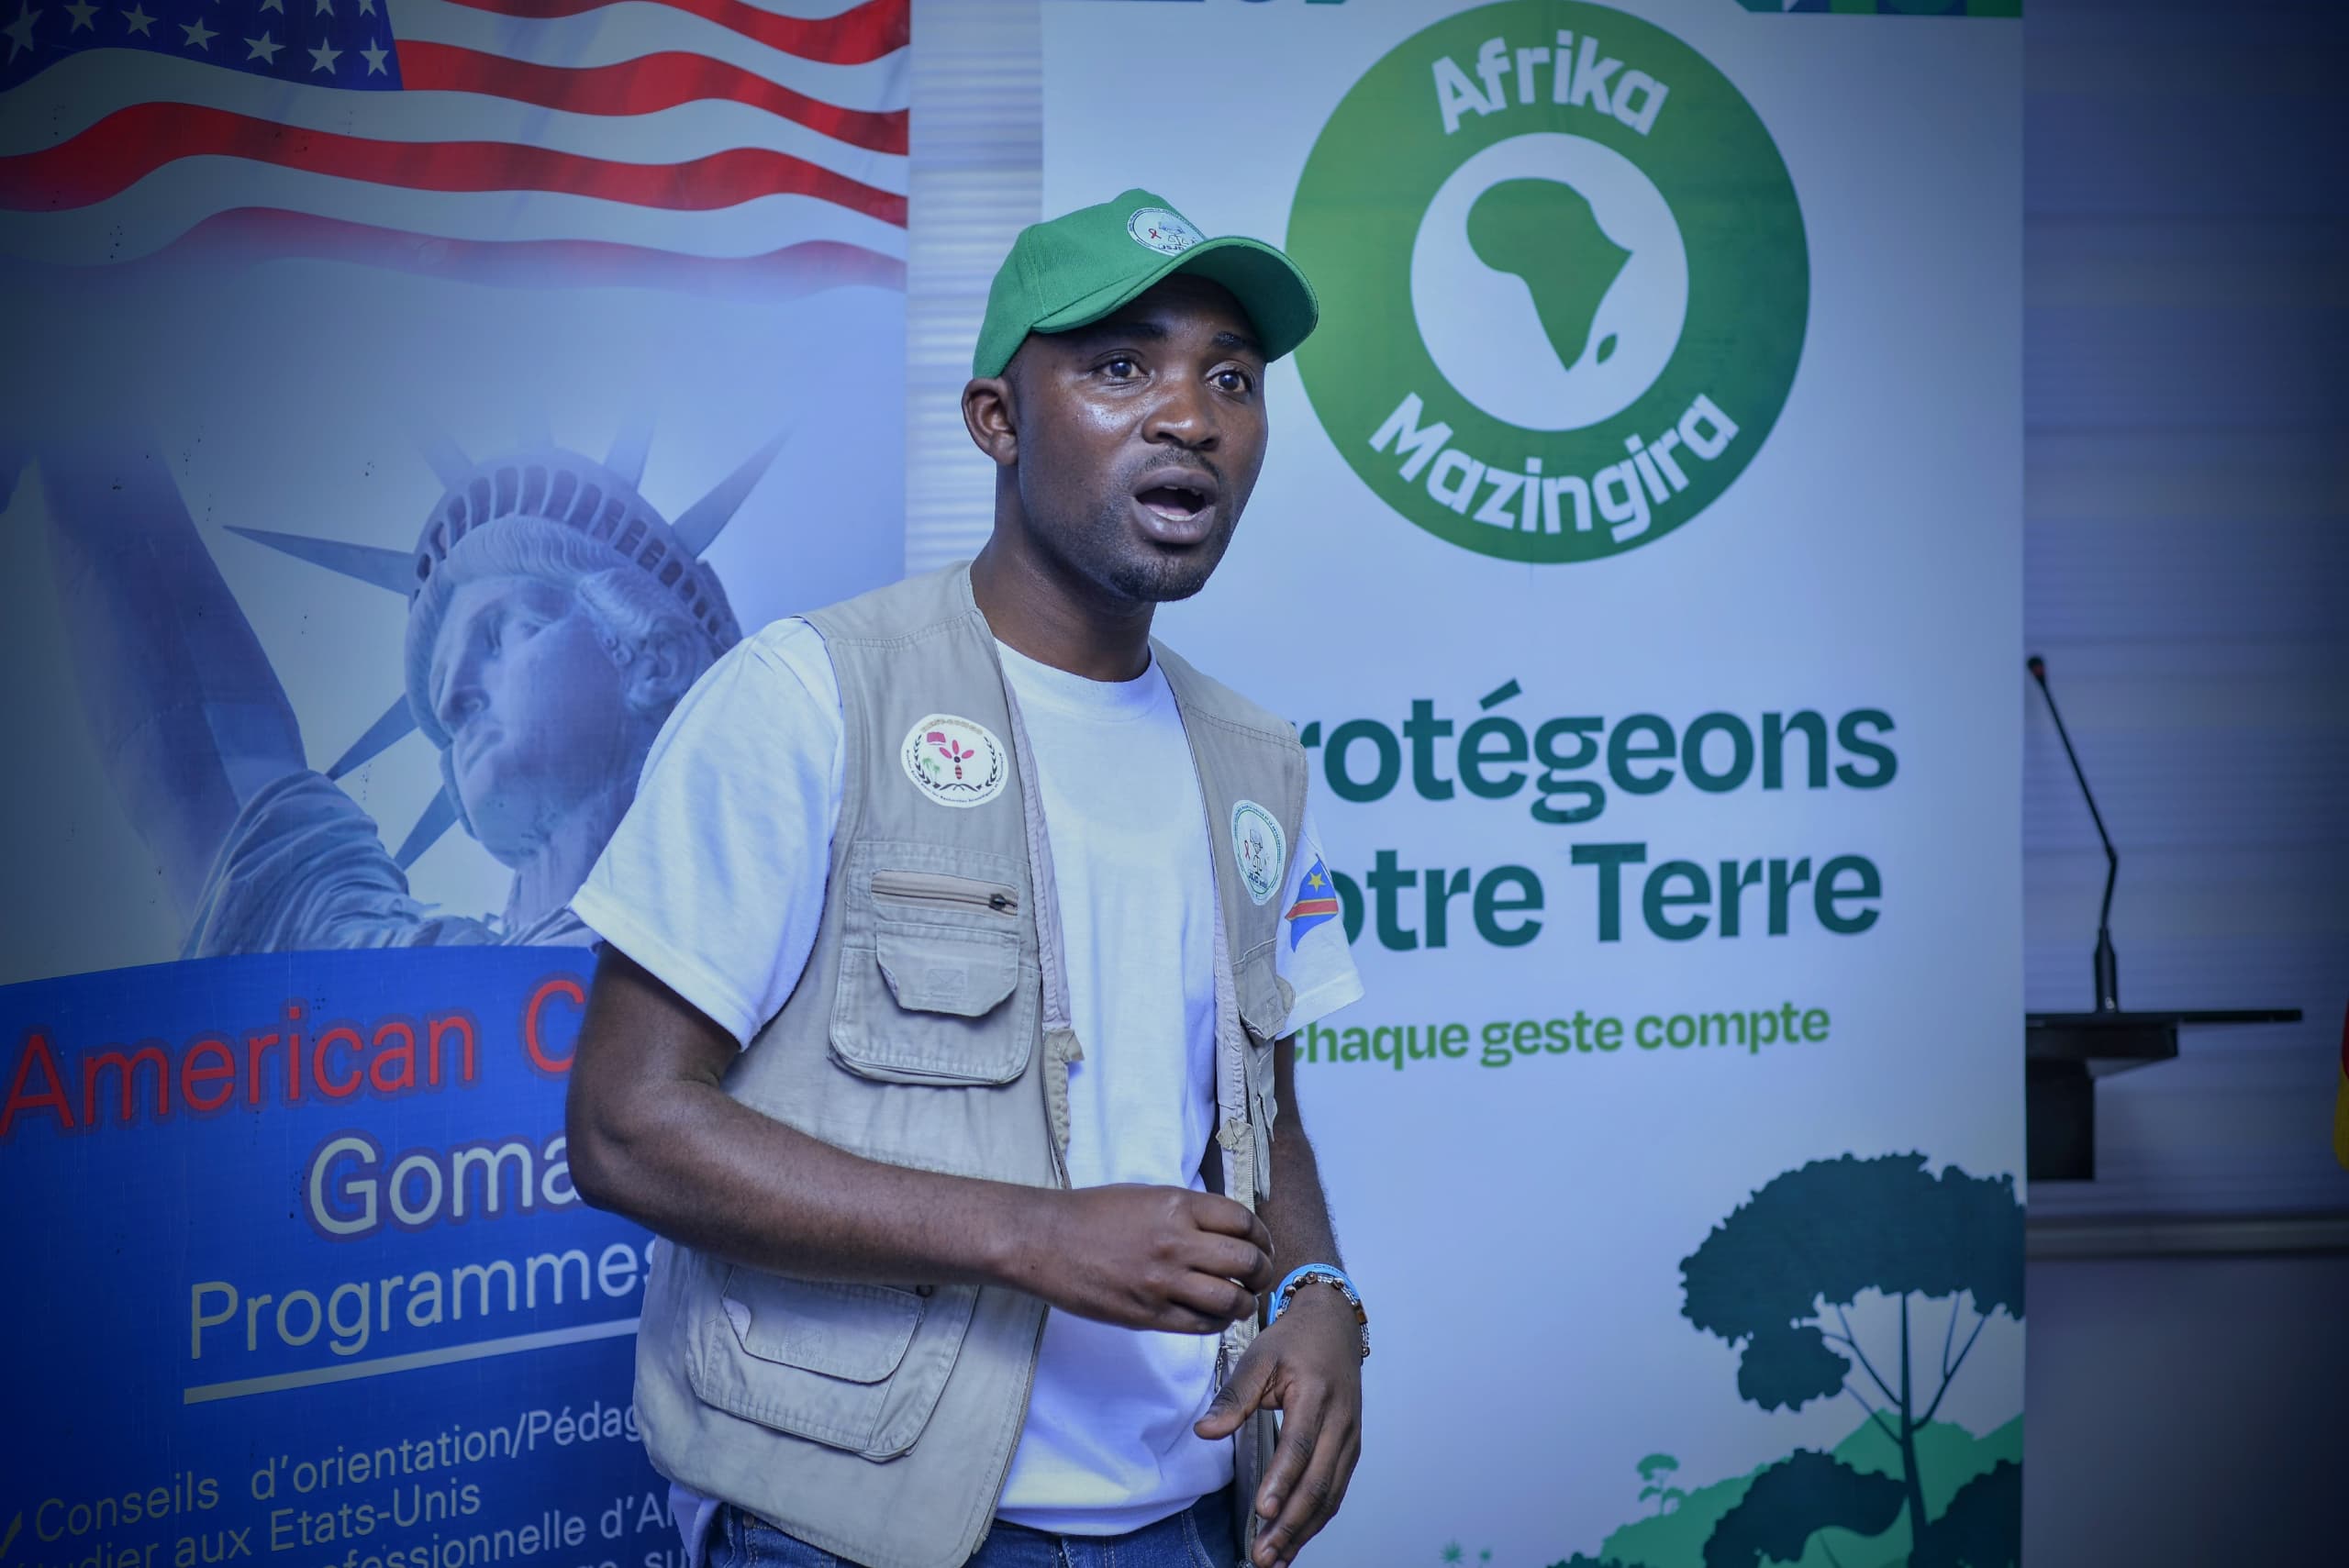 You are currently viewing Goma-Environnement: des jeunes initiés dans la lutte contre le changement climatique.